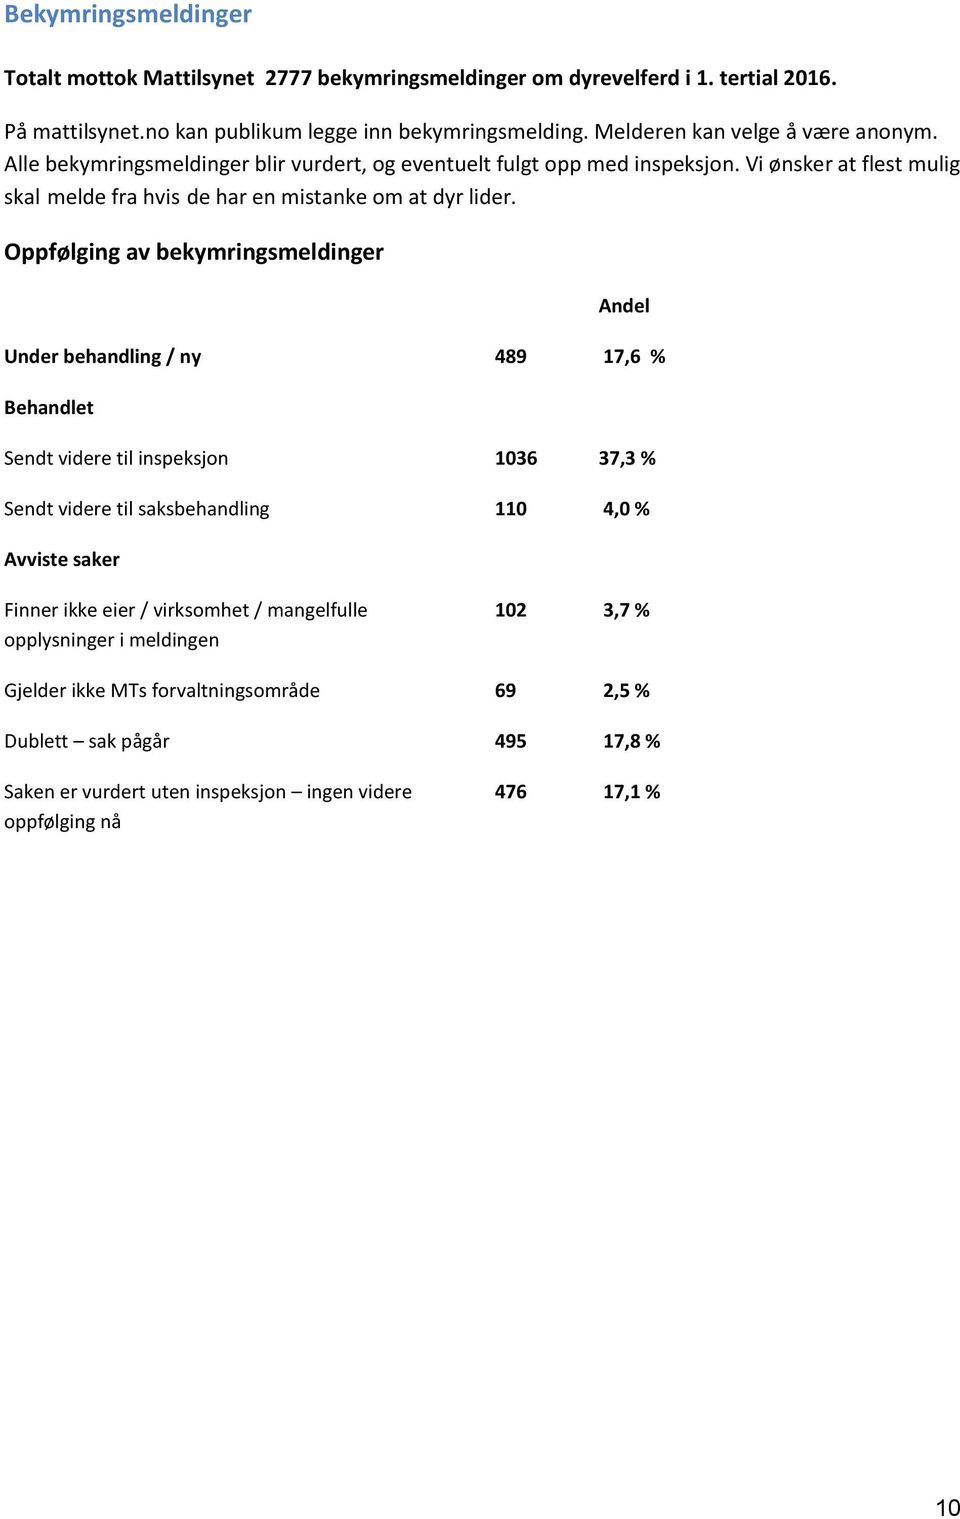 Oppfølging av bekymringsmeldinger Andel Under behandling / ny 489 17,6 % Behandlet Sendt videre til inspeksjon 1036 37,3 % Sendt videre til saksbehandling 110 4,0 % Avviste saker Finner